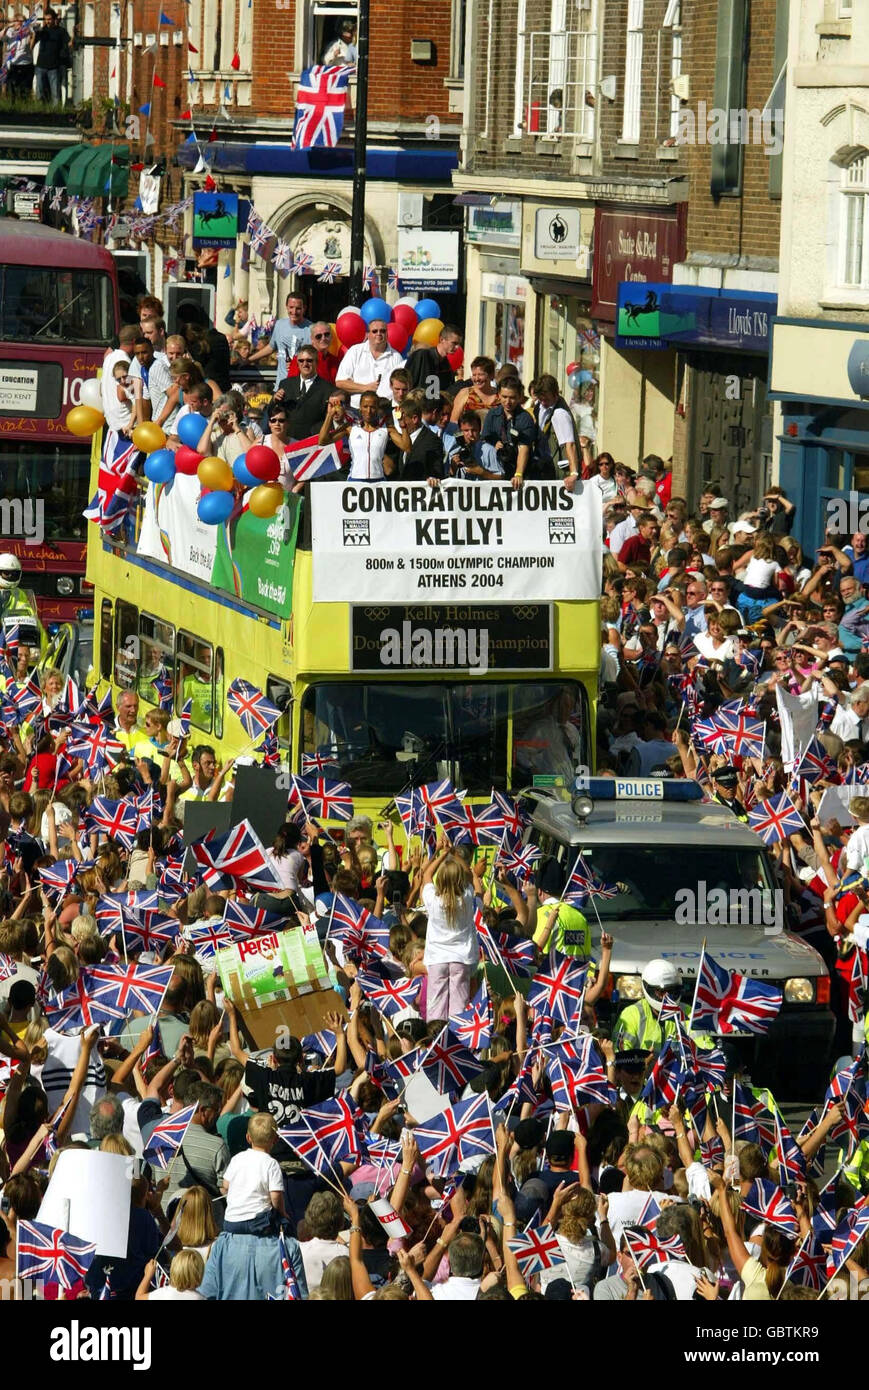 Kelly Holmes zeigt ihre beiden olympischen Goldmedaillen von der Spitze eines offenen Busses, während Tausende von Menschen die Straßen ihrer Heimatstadt Tonbridge in Kent packen, um ihr Zuhause von Athen aus zu begrüßen Stockfoto